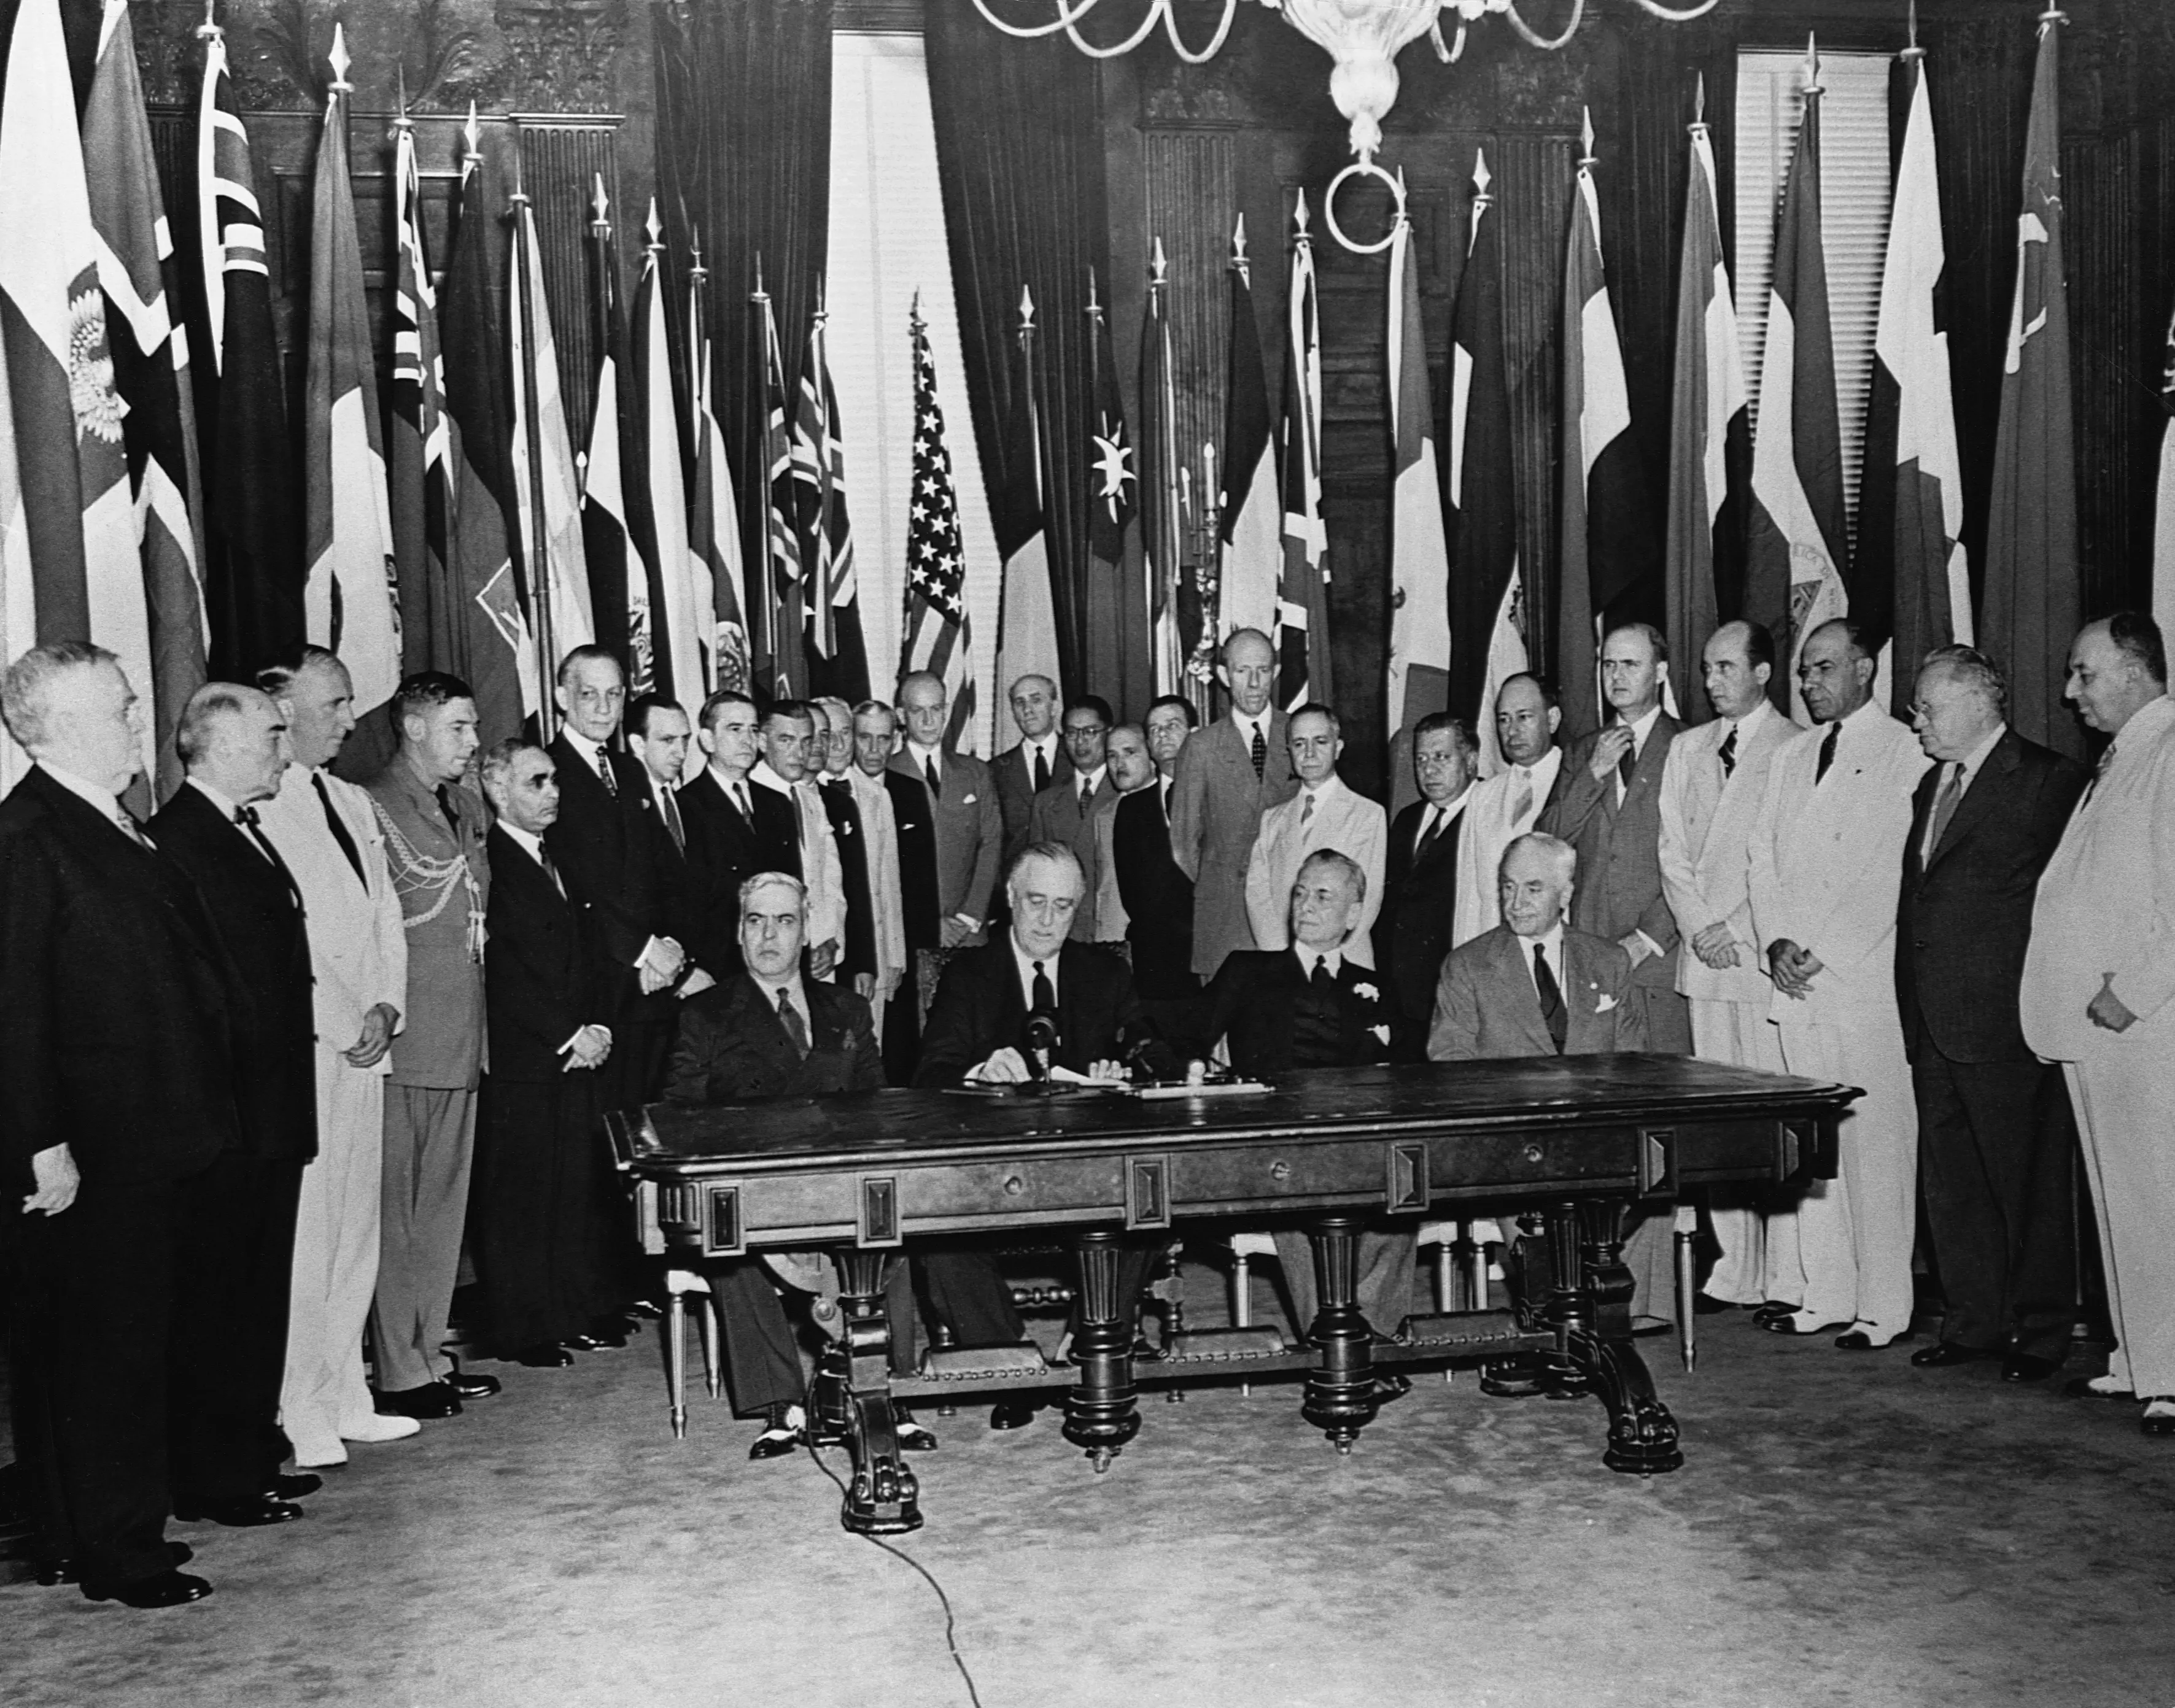 Организация созданная после второй мировой. ООН 1942 Franklin Roosevelt. 1 Января 1942 декларация Объединенных наций. США 19 век Рузвельт. Франклин Рузвельт организовал ООН.